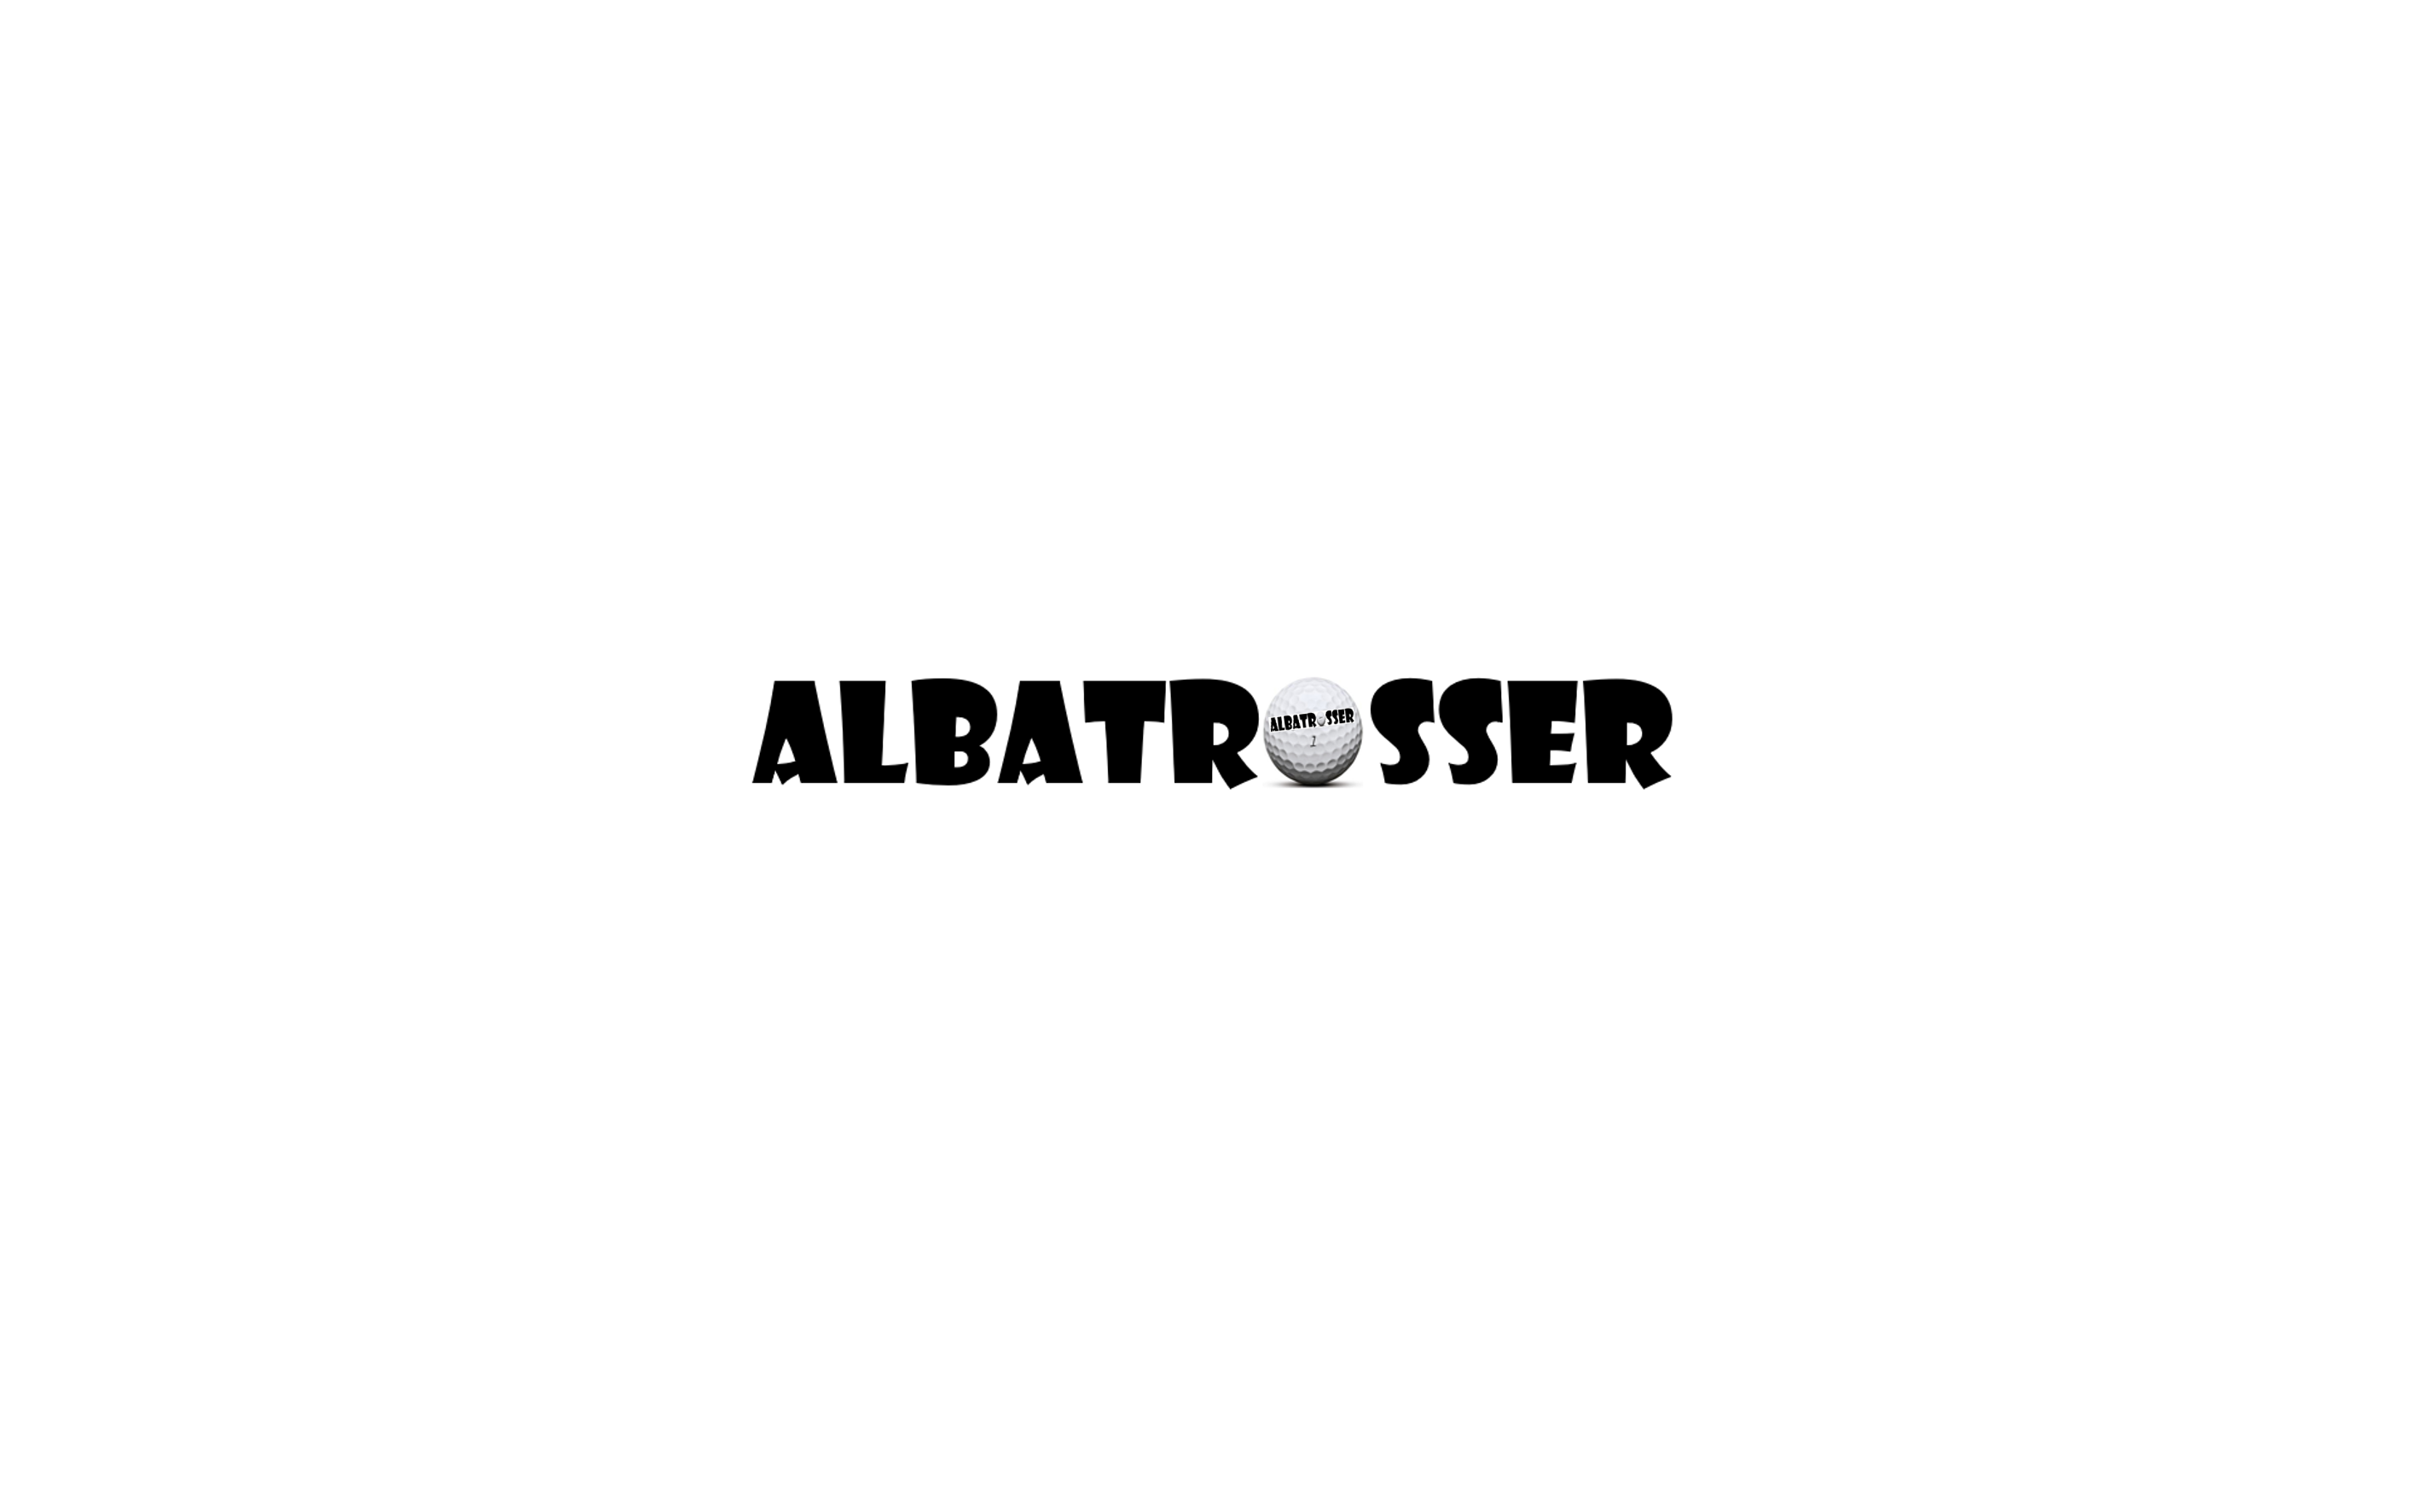 Albatrosser Episode 001 Safeway